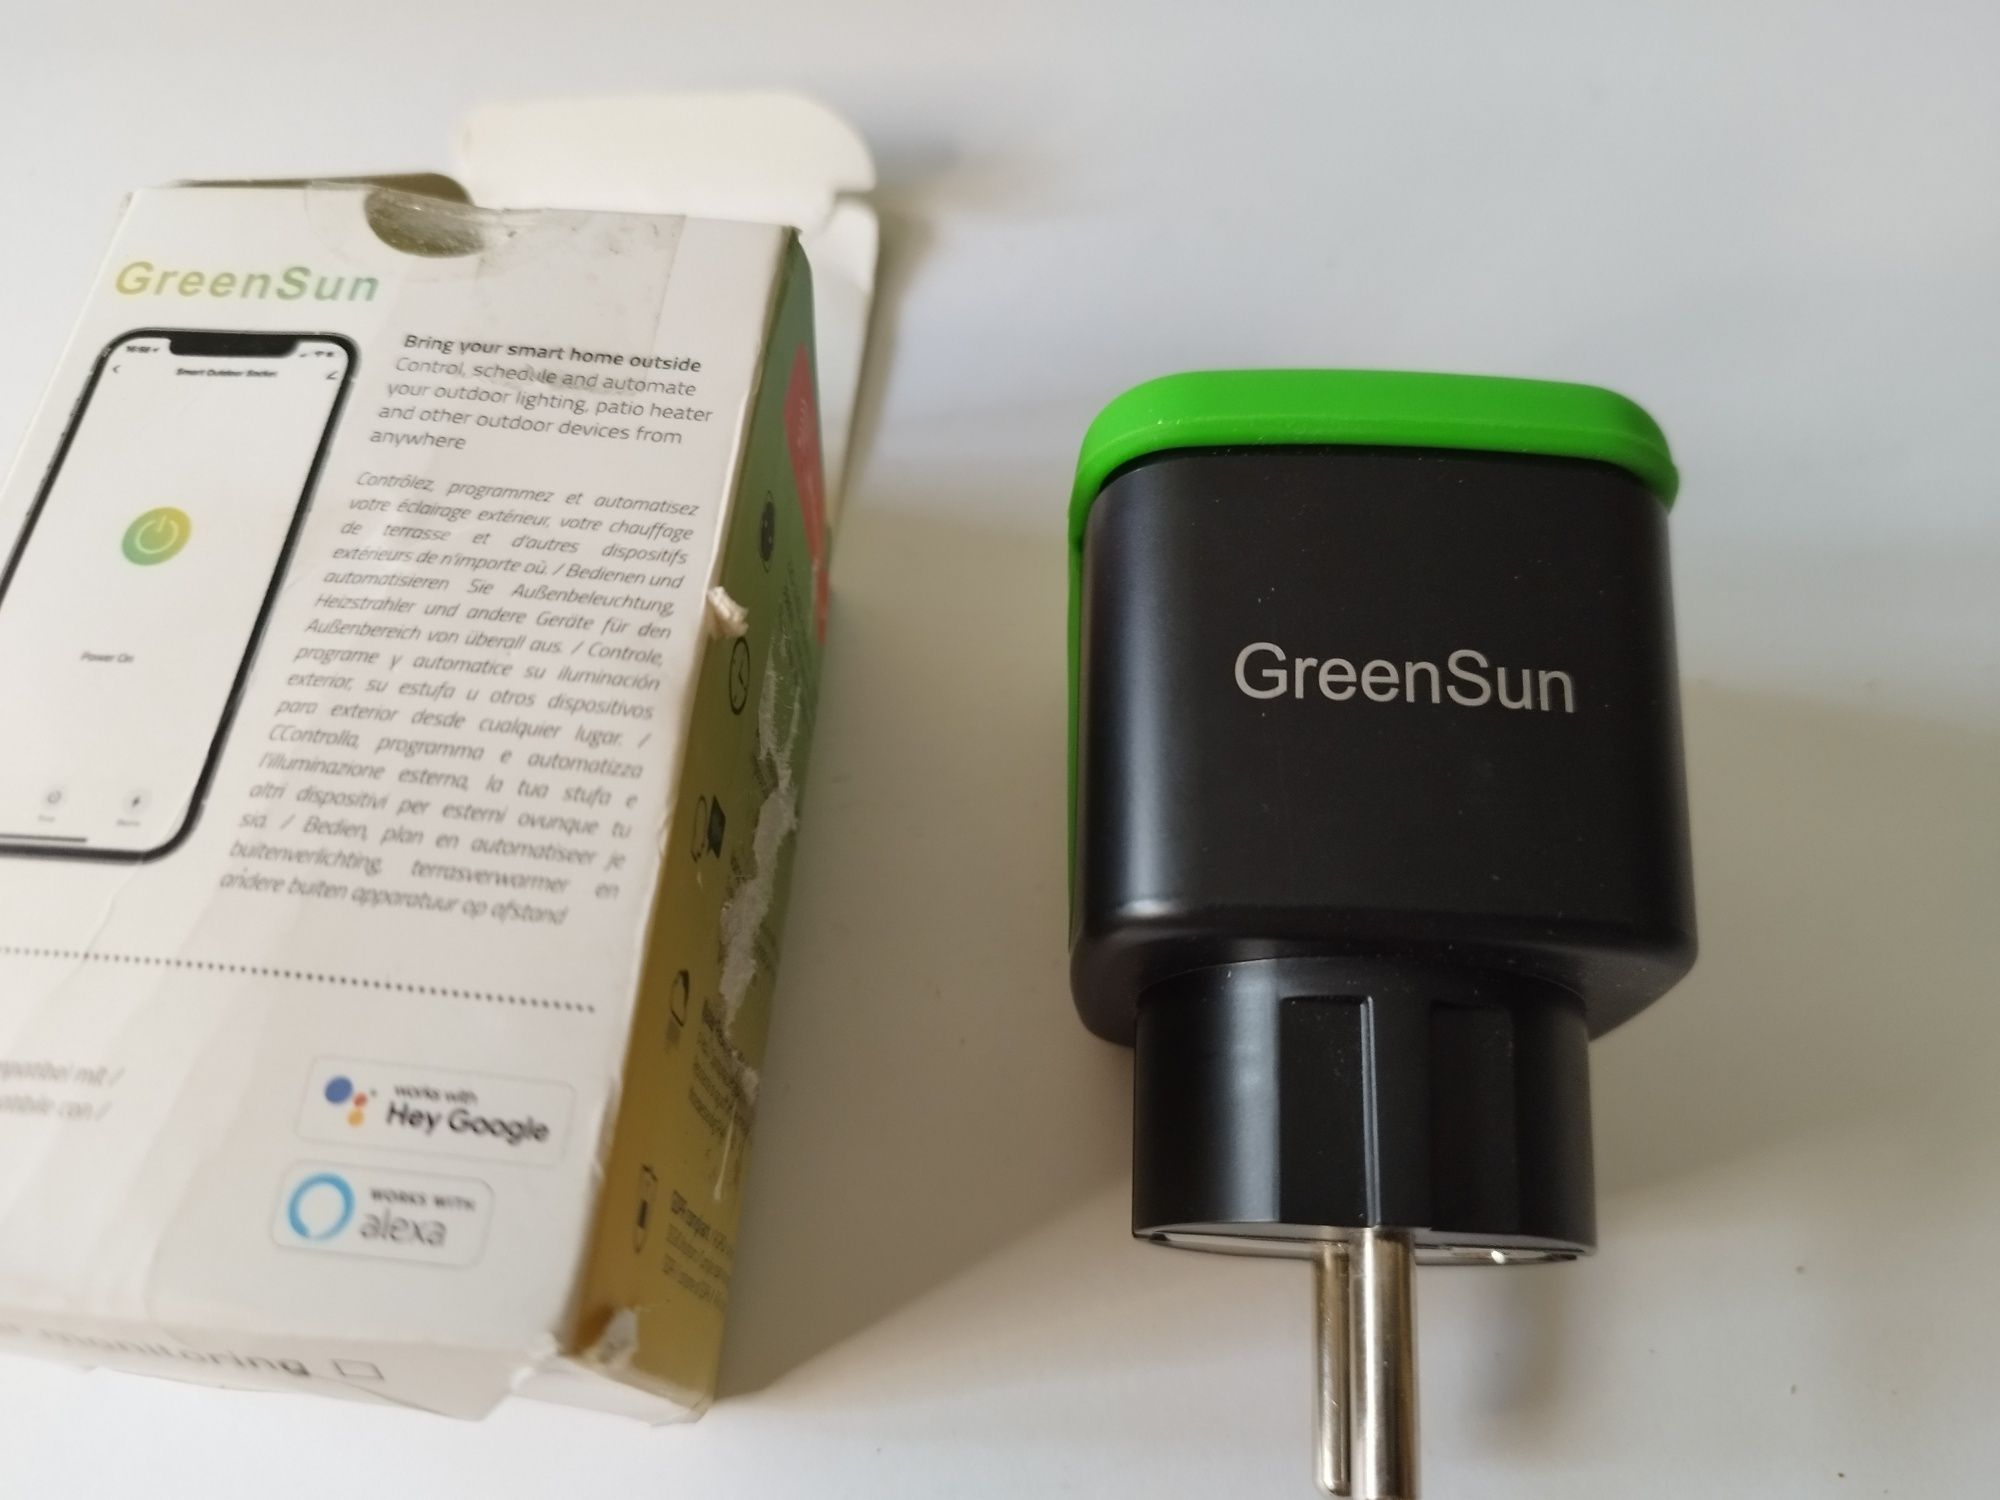 GreenSun gniazdko Wi-Fi, gniazdko ogrodowe z programatorem czasowym, s